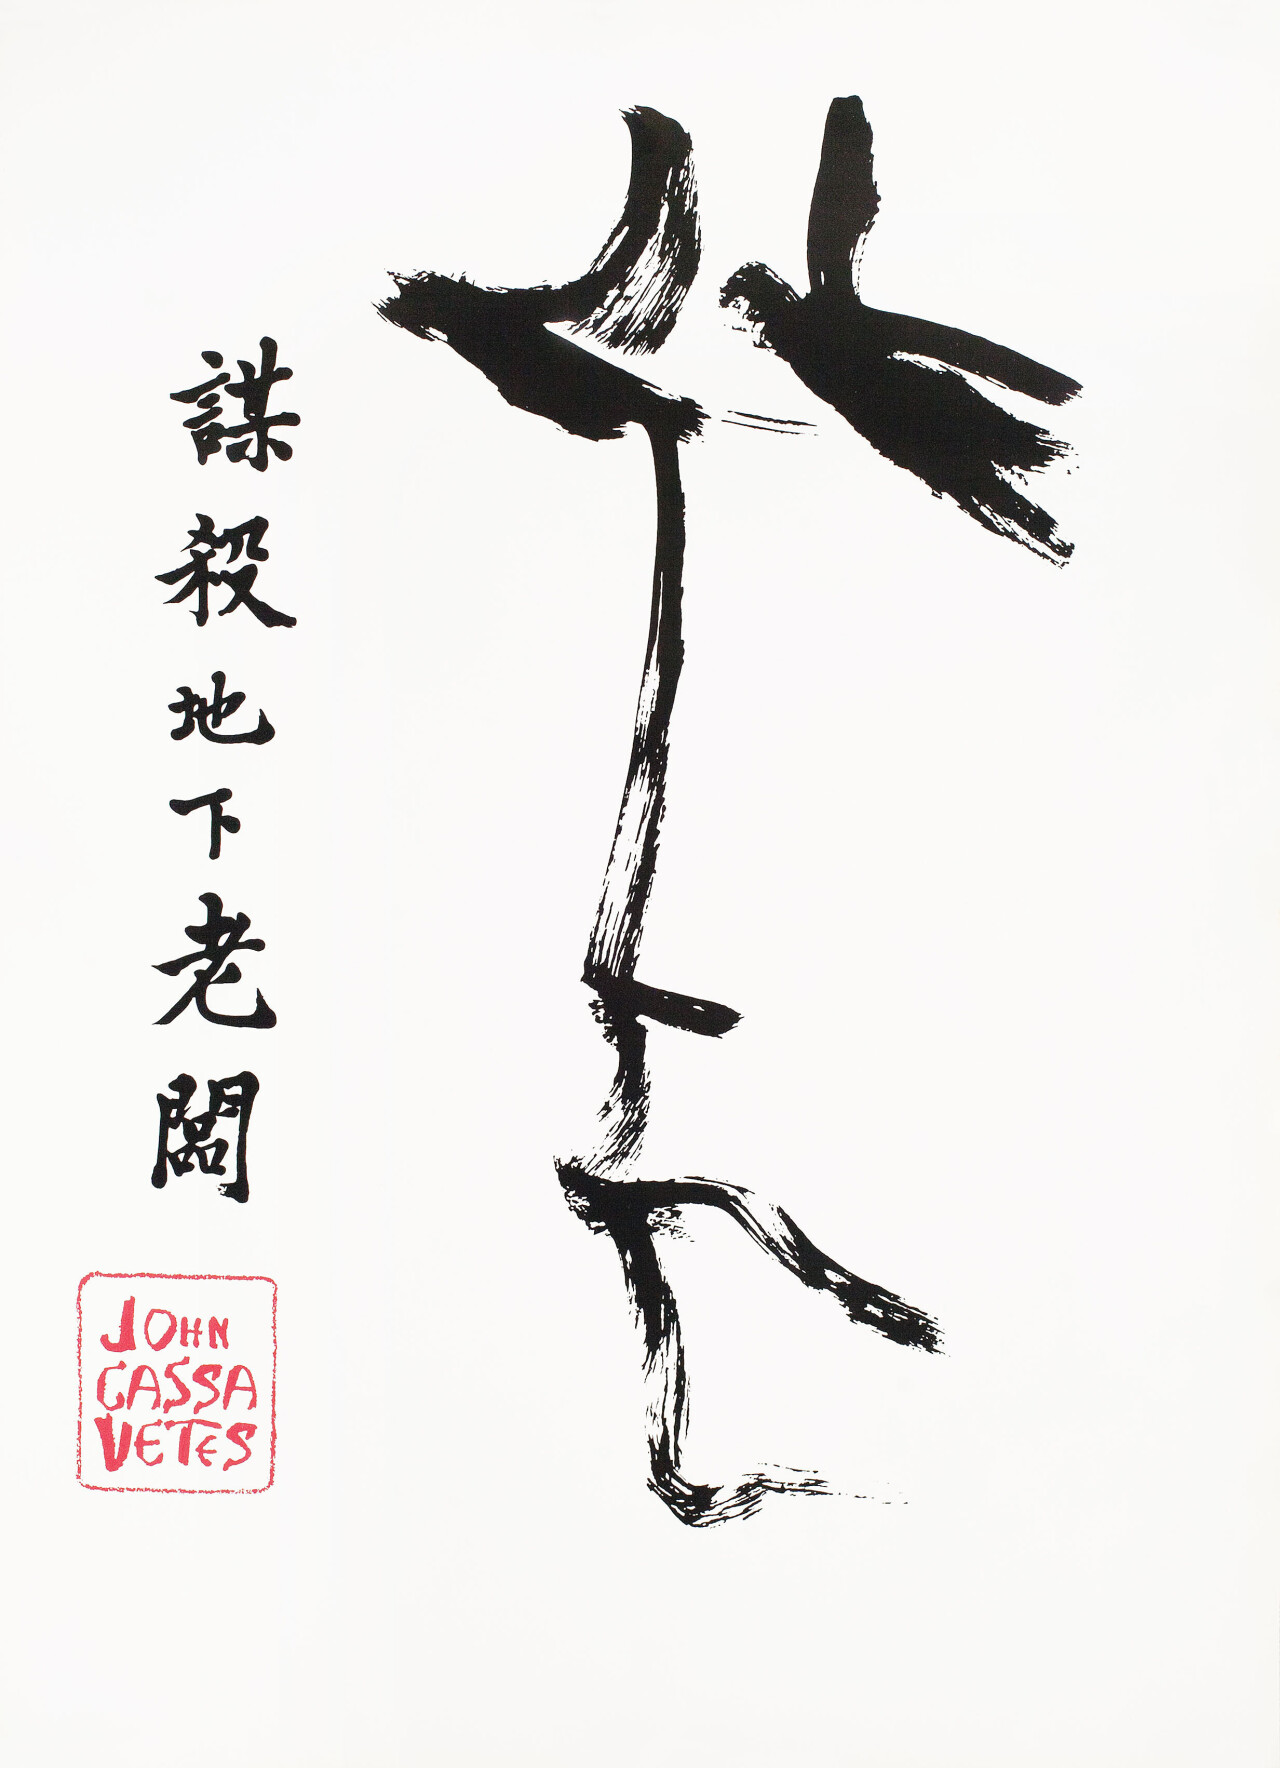 Убийство китайского букмекера (The Killing of a Chinese Bookie, 1976), режиссёр Джон Кассаветис, минималистичный постер к фильму (США, 1976 год)